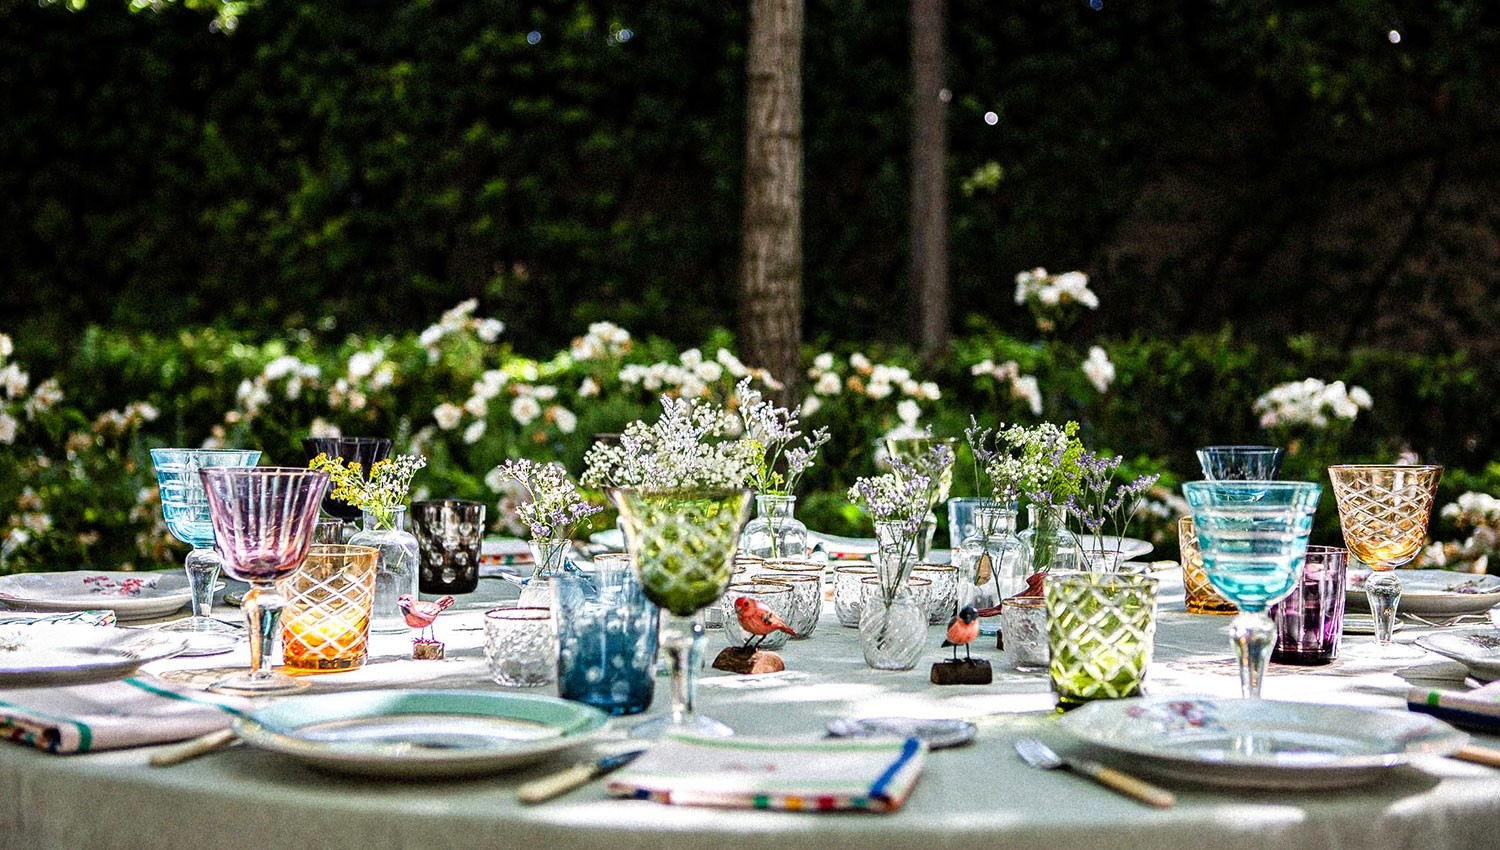 Table extérieure décorée de fleurs et de vaisselle.